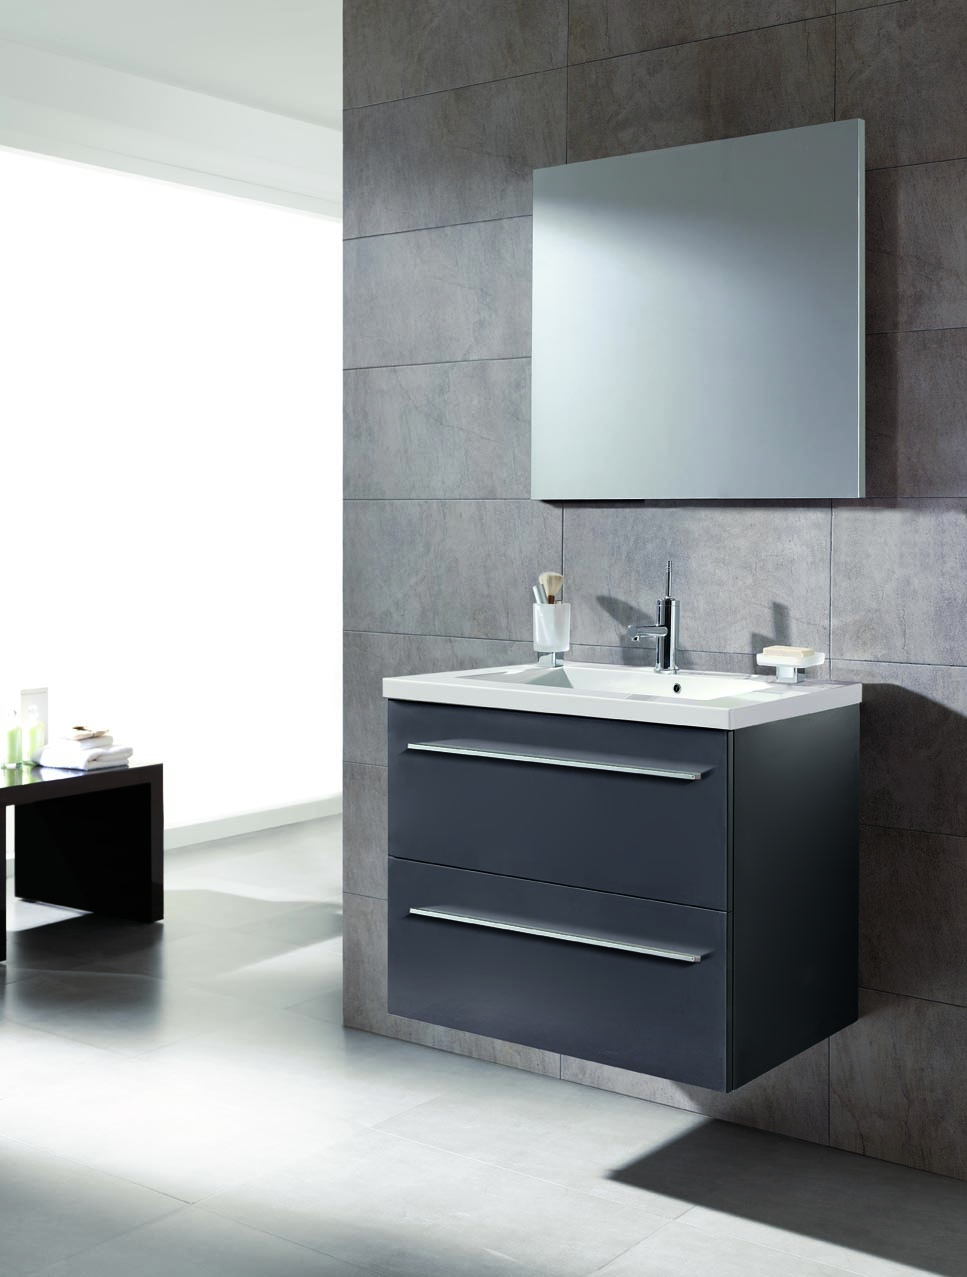 Decorar cuartos de baño – Muebles y decoración de baños  - imagenes de muebles para baños modernos